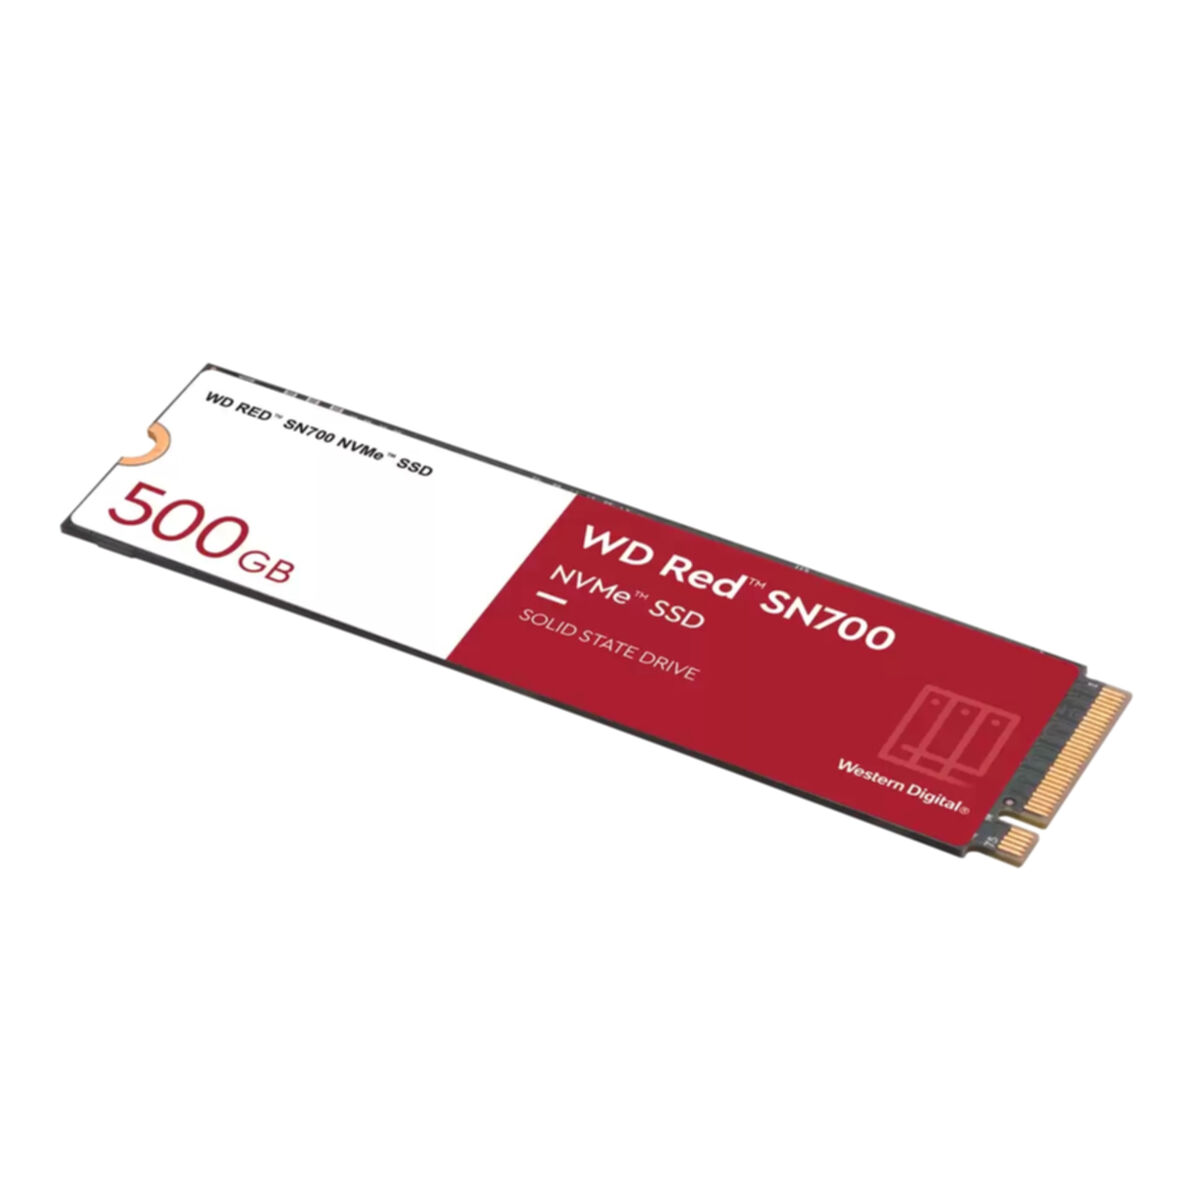 intern GB, WESTERN SSD, SN700, DIGITAL 500 Red WD